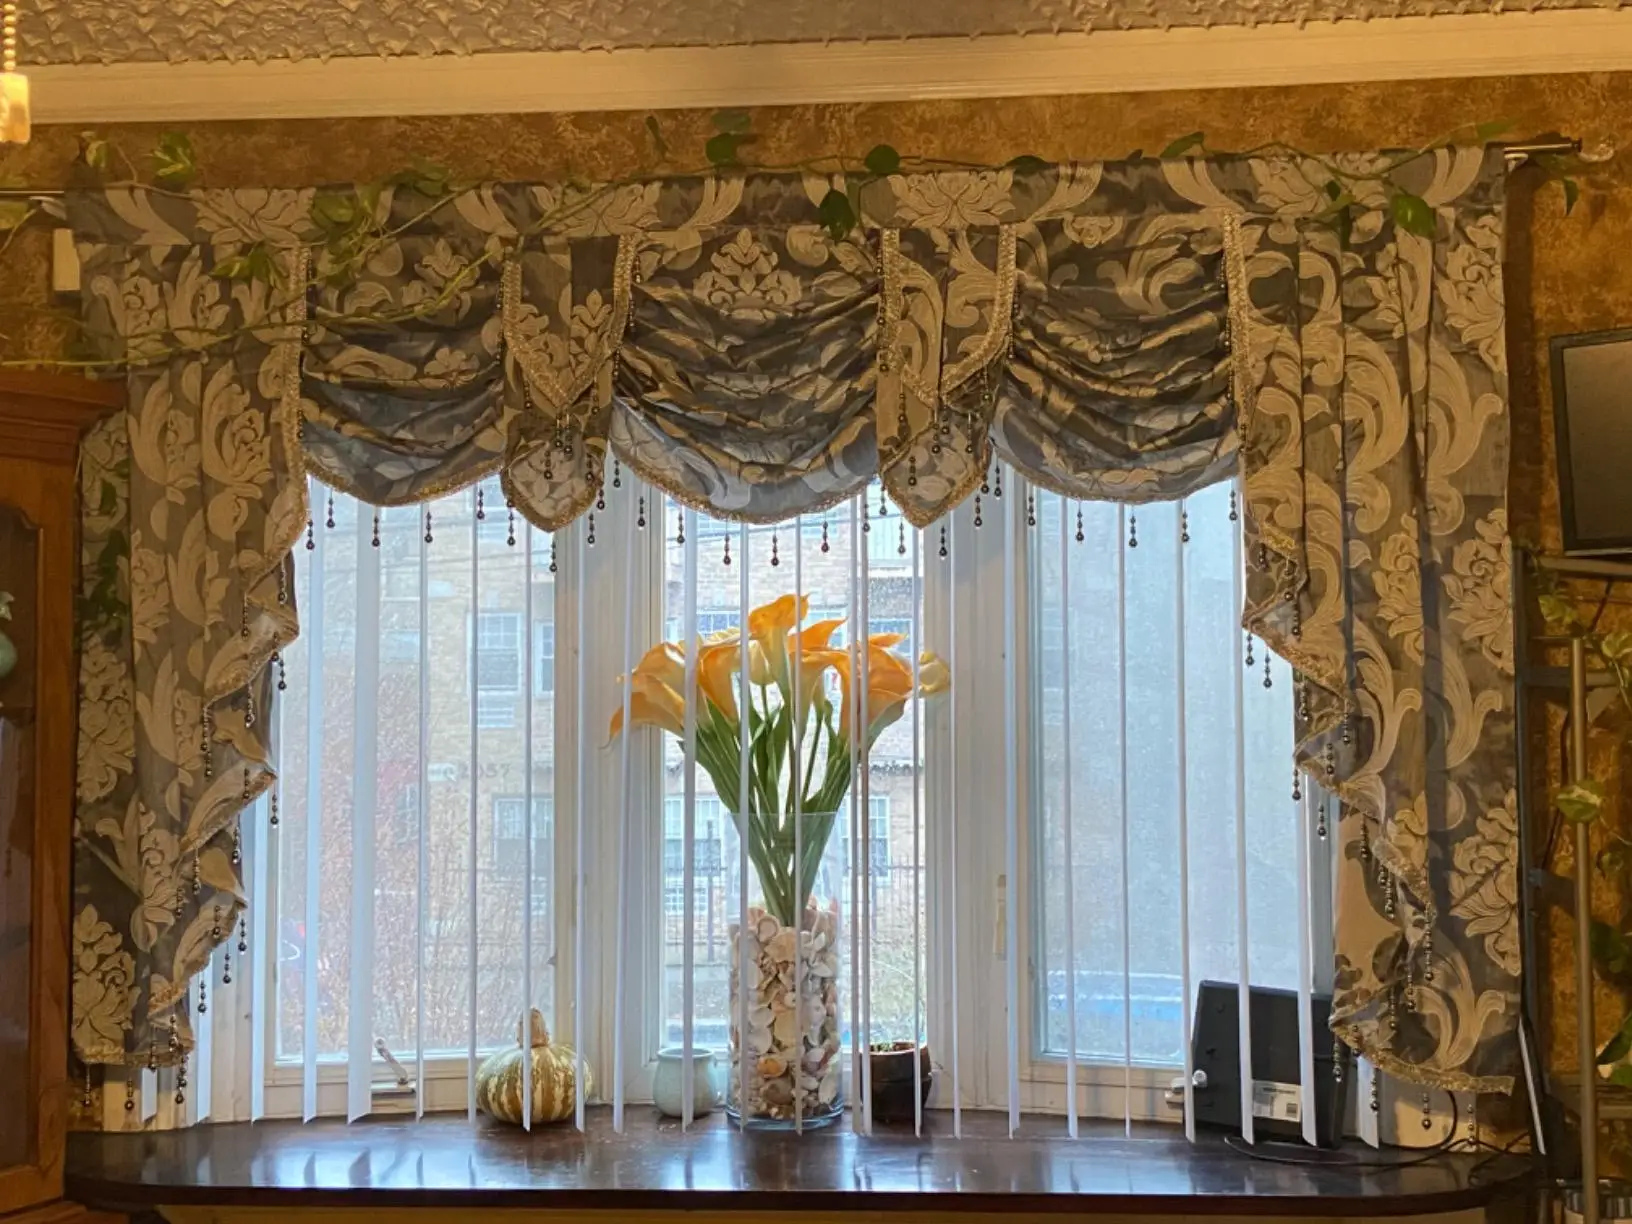 palmera cortinas negro verde hojas cortinas para sala de estar agradable  decoración de la habitación